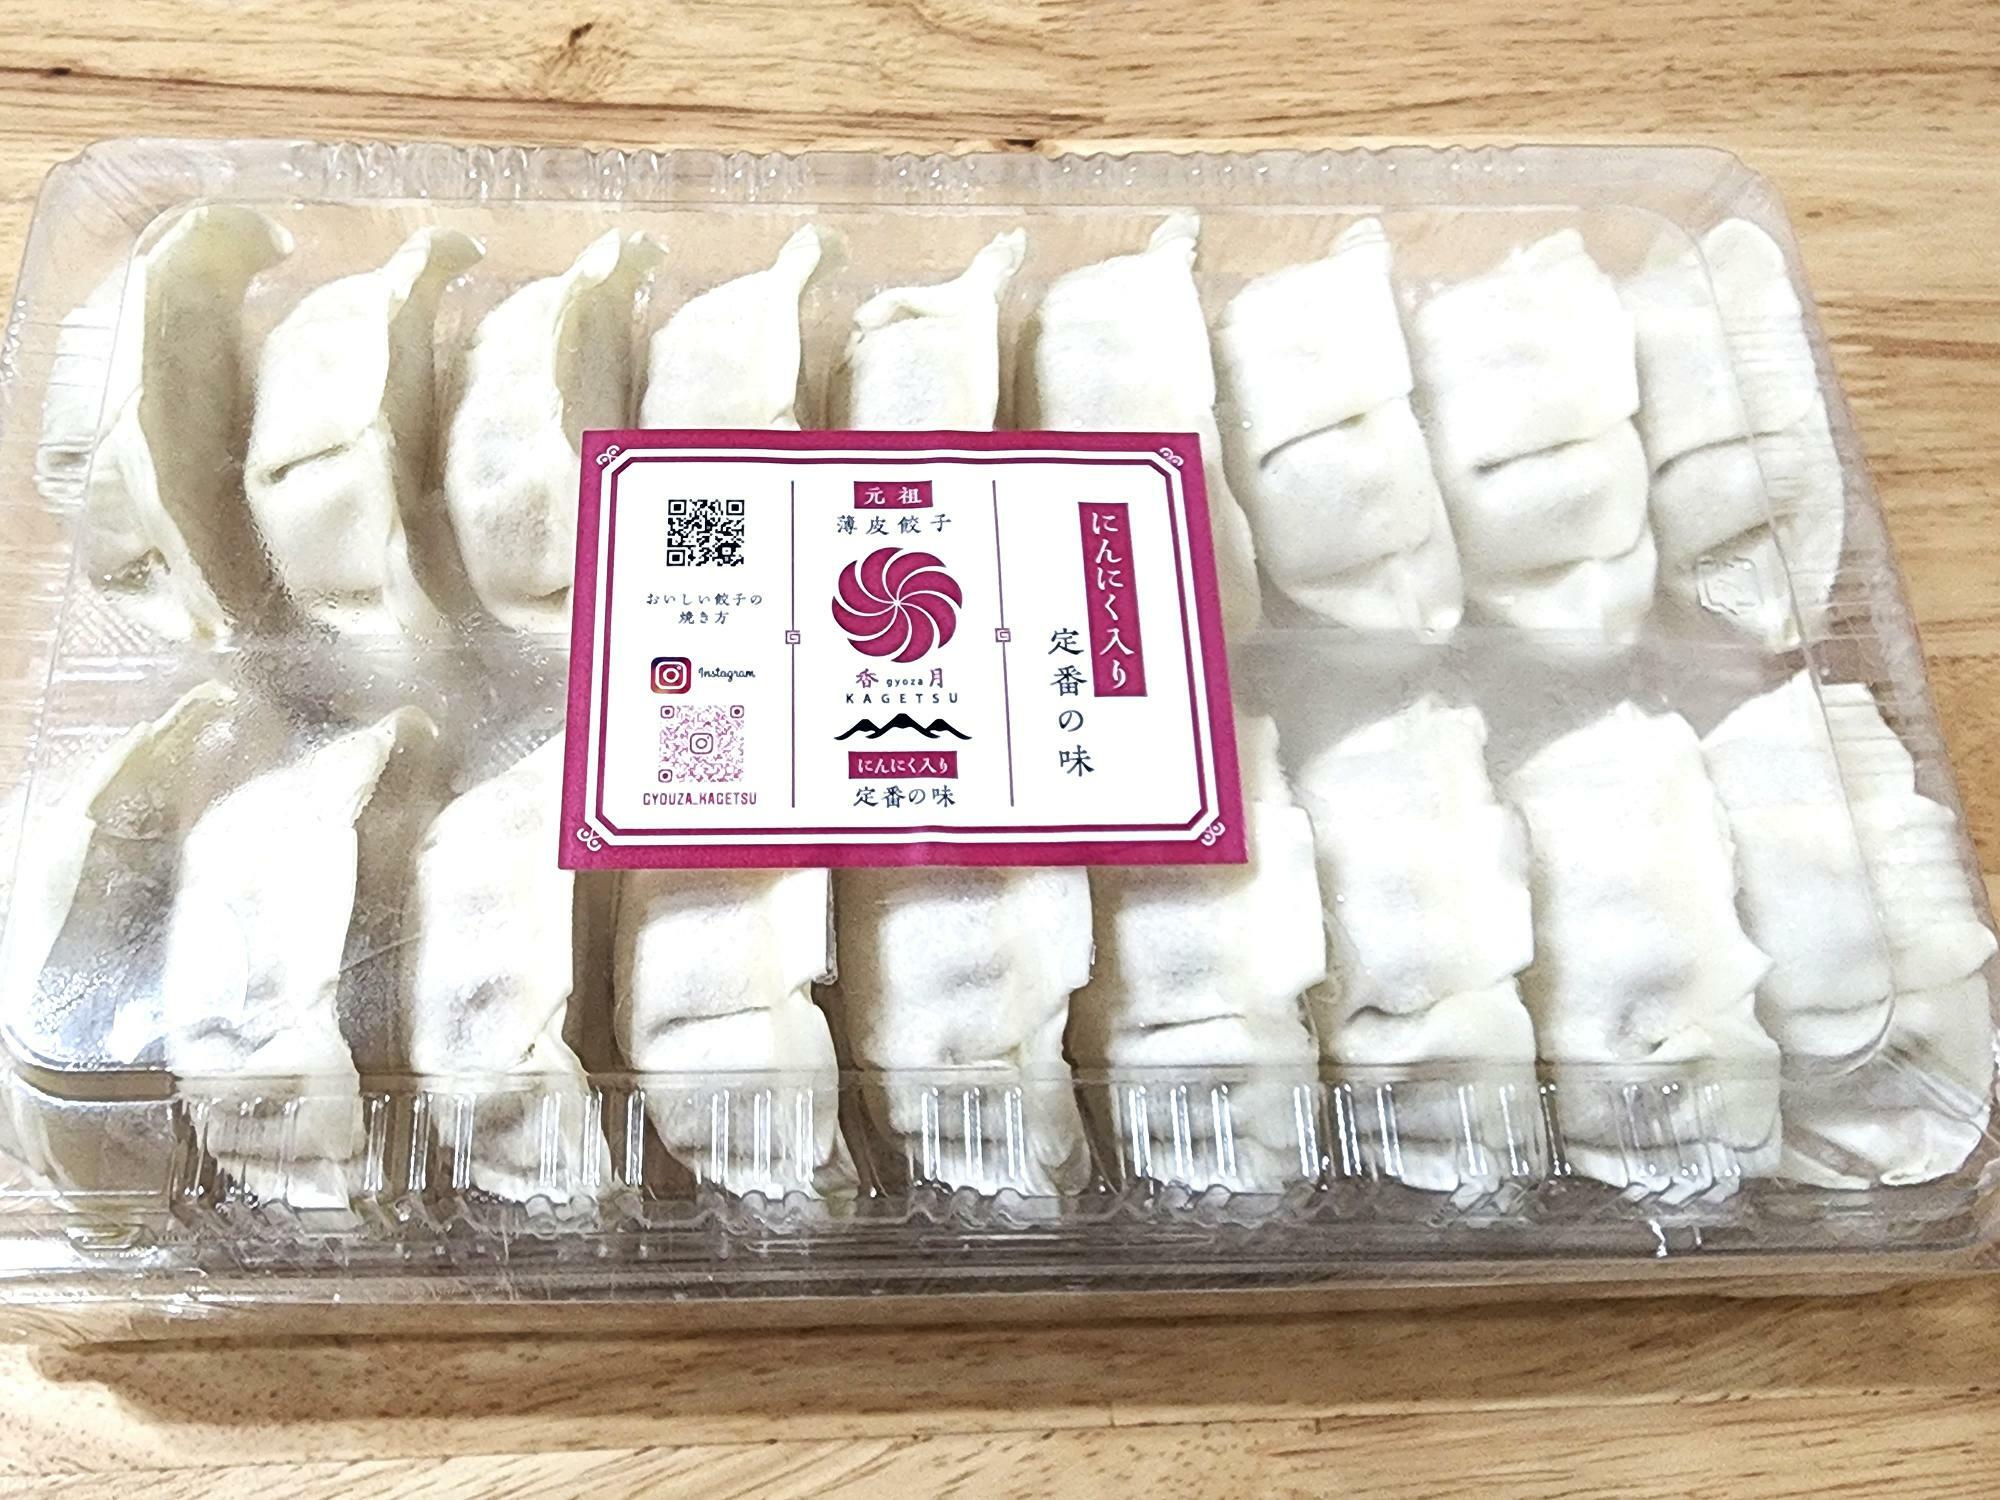 「株式会社ふじや」が販売している「餃子香月」の薄皮餃子（にんにく入り定番の味）。